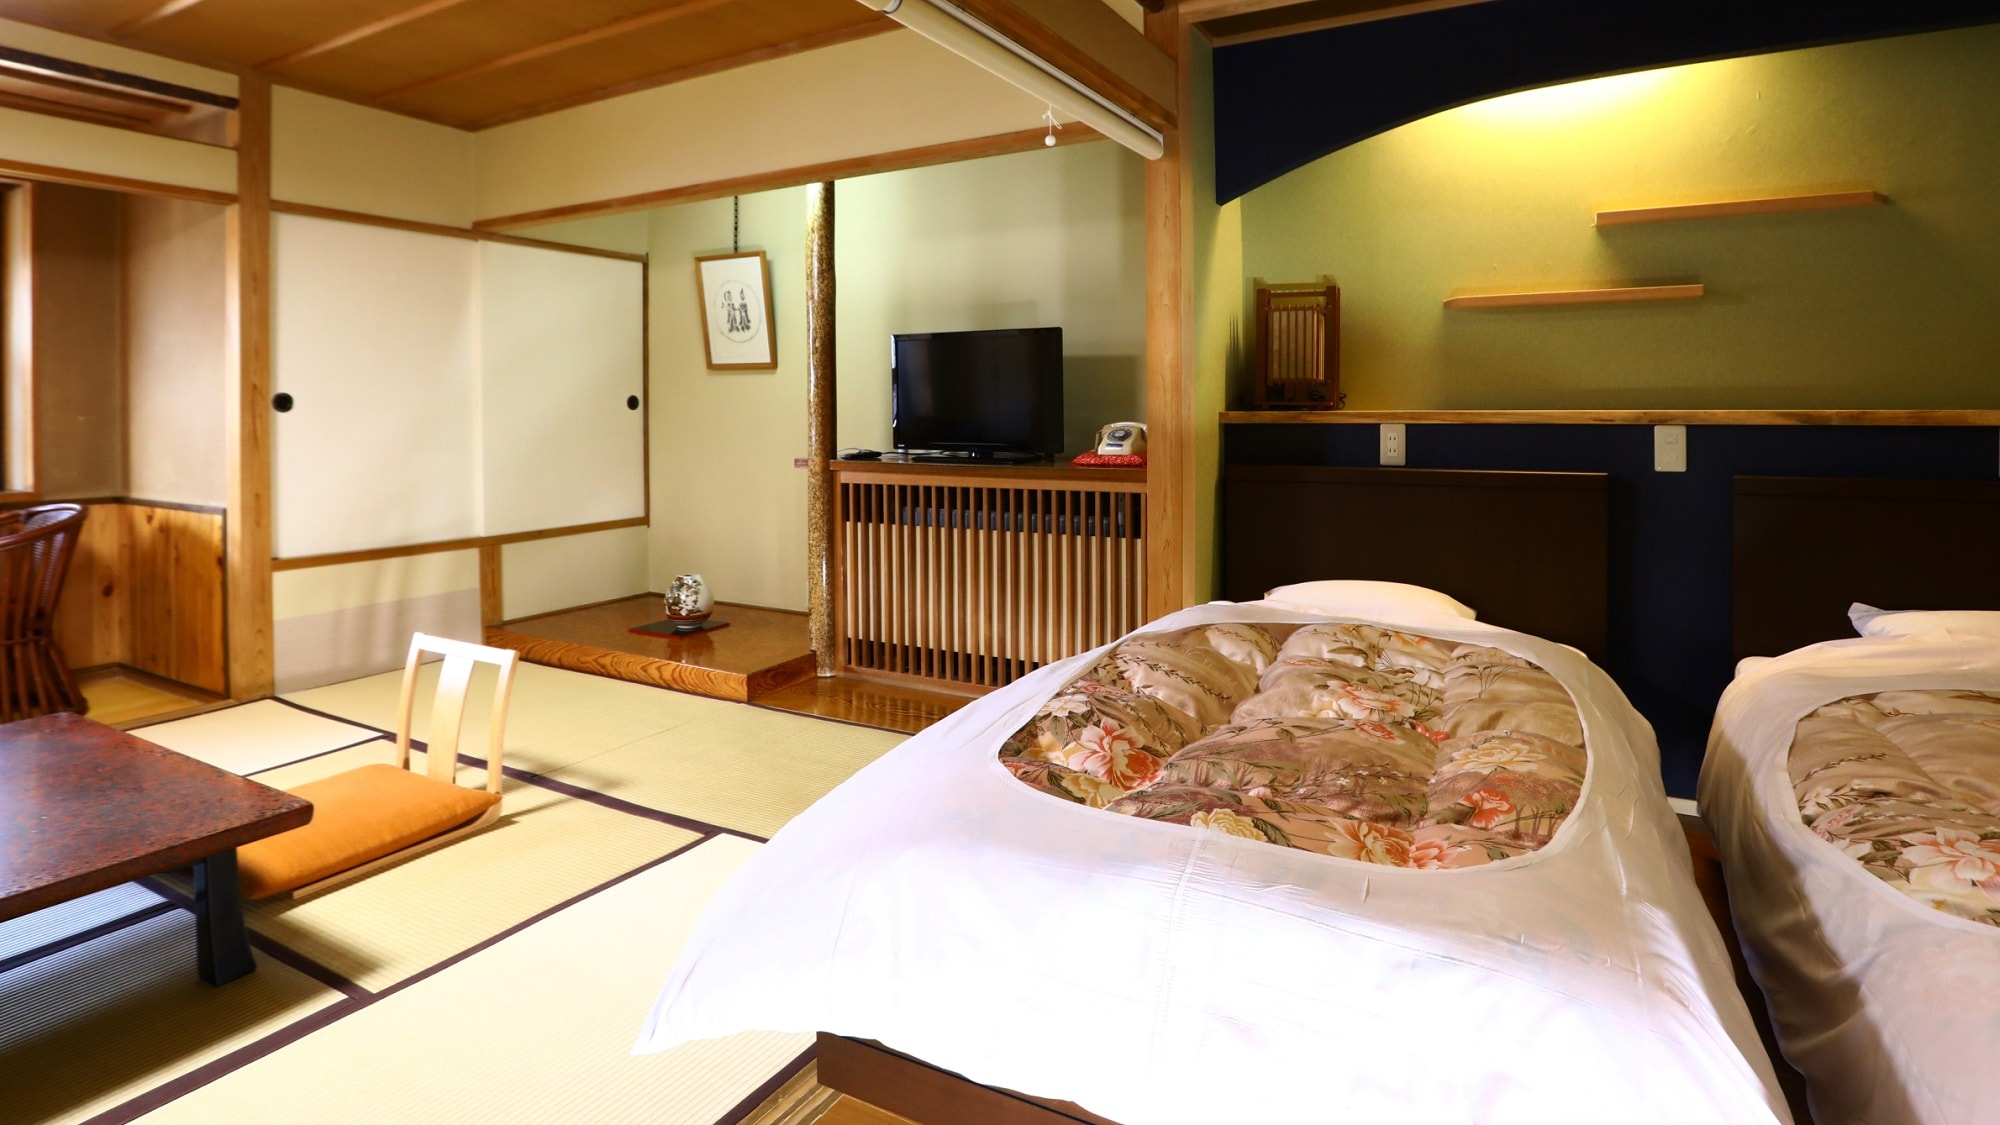 Kamar bergaya Jepang 10 tikar tatami + tempat tidur twin + pelek lebar [Tipe A kamar bergaya Jepang-Barat]